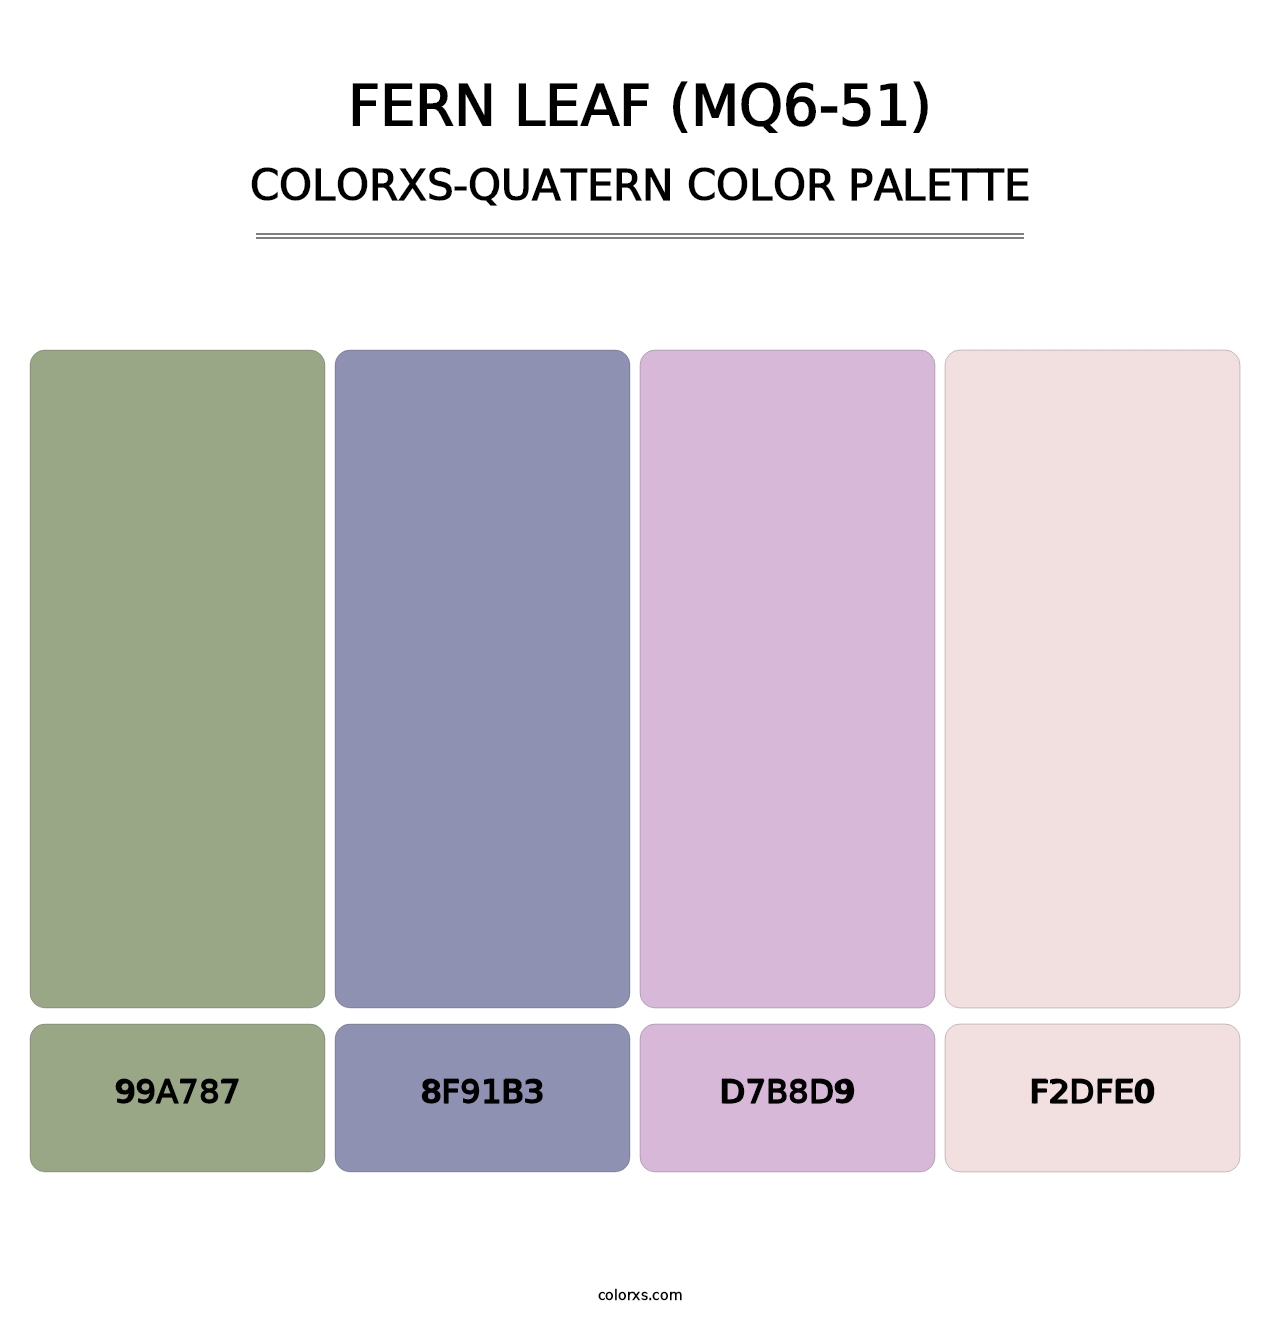 Fern Leaf (MQ6-51) - Colorxs Quatern Palette